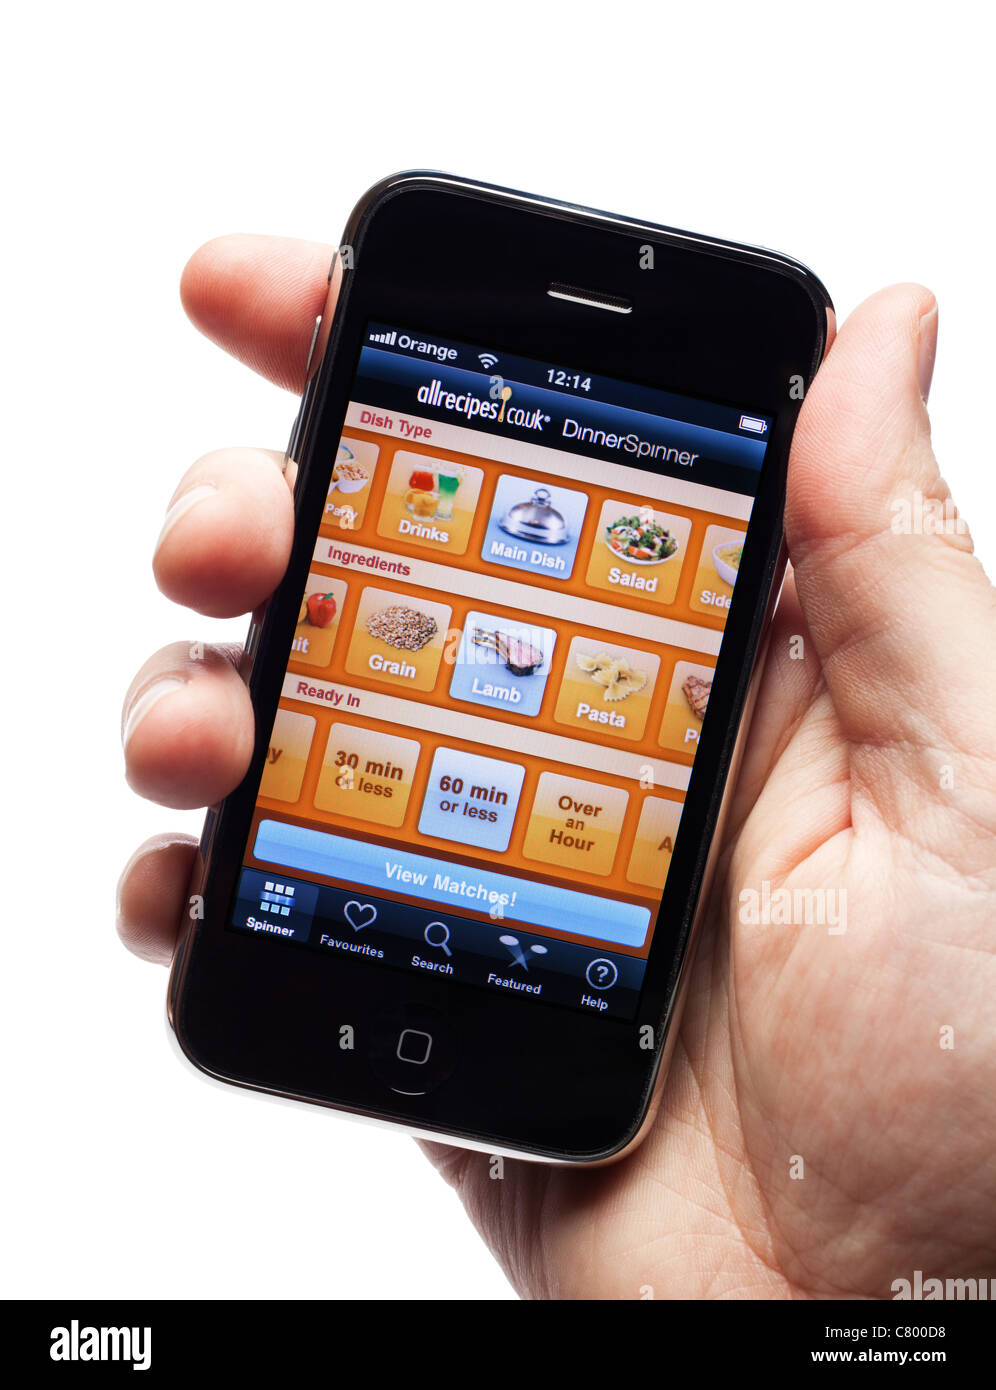 IPhone mostrando una receta app en un smartphone smart phone teléfono móvil Foto de stock